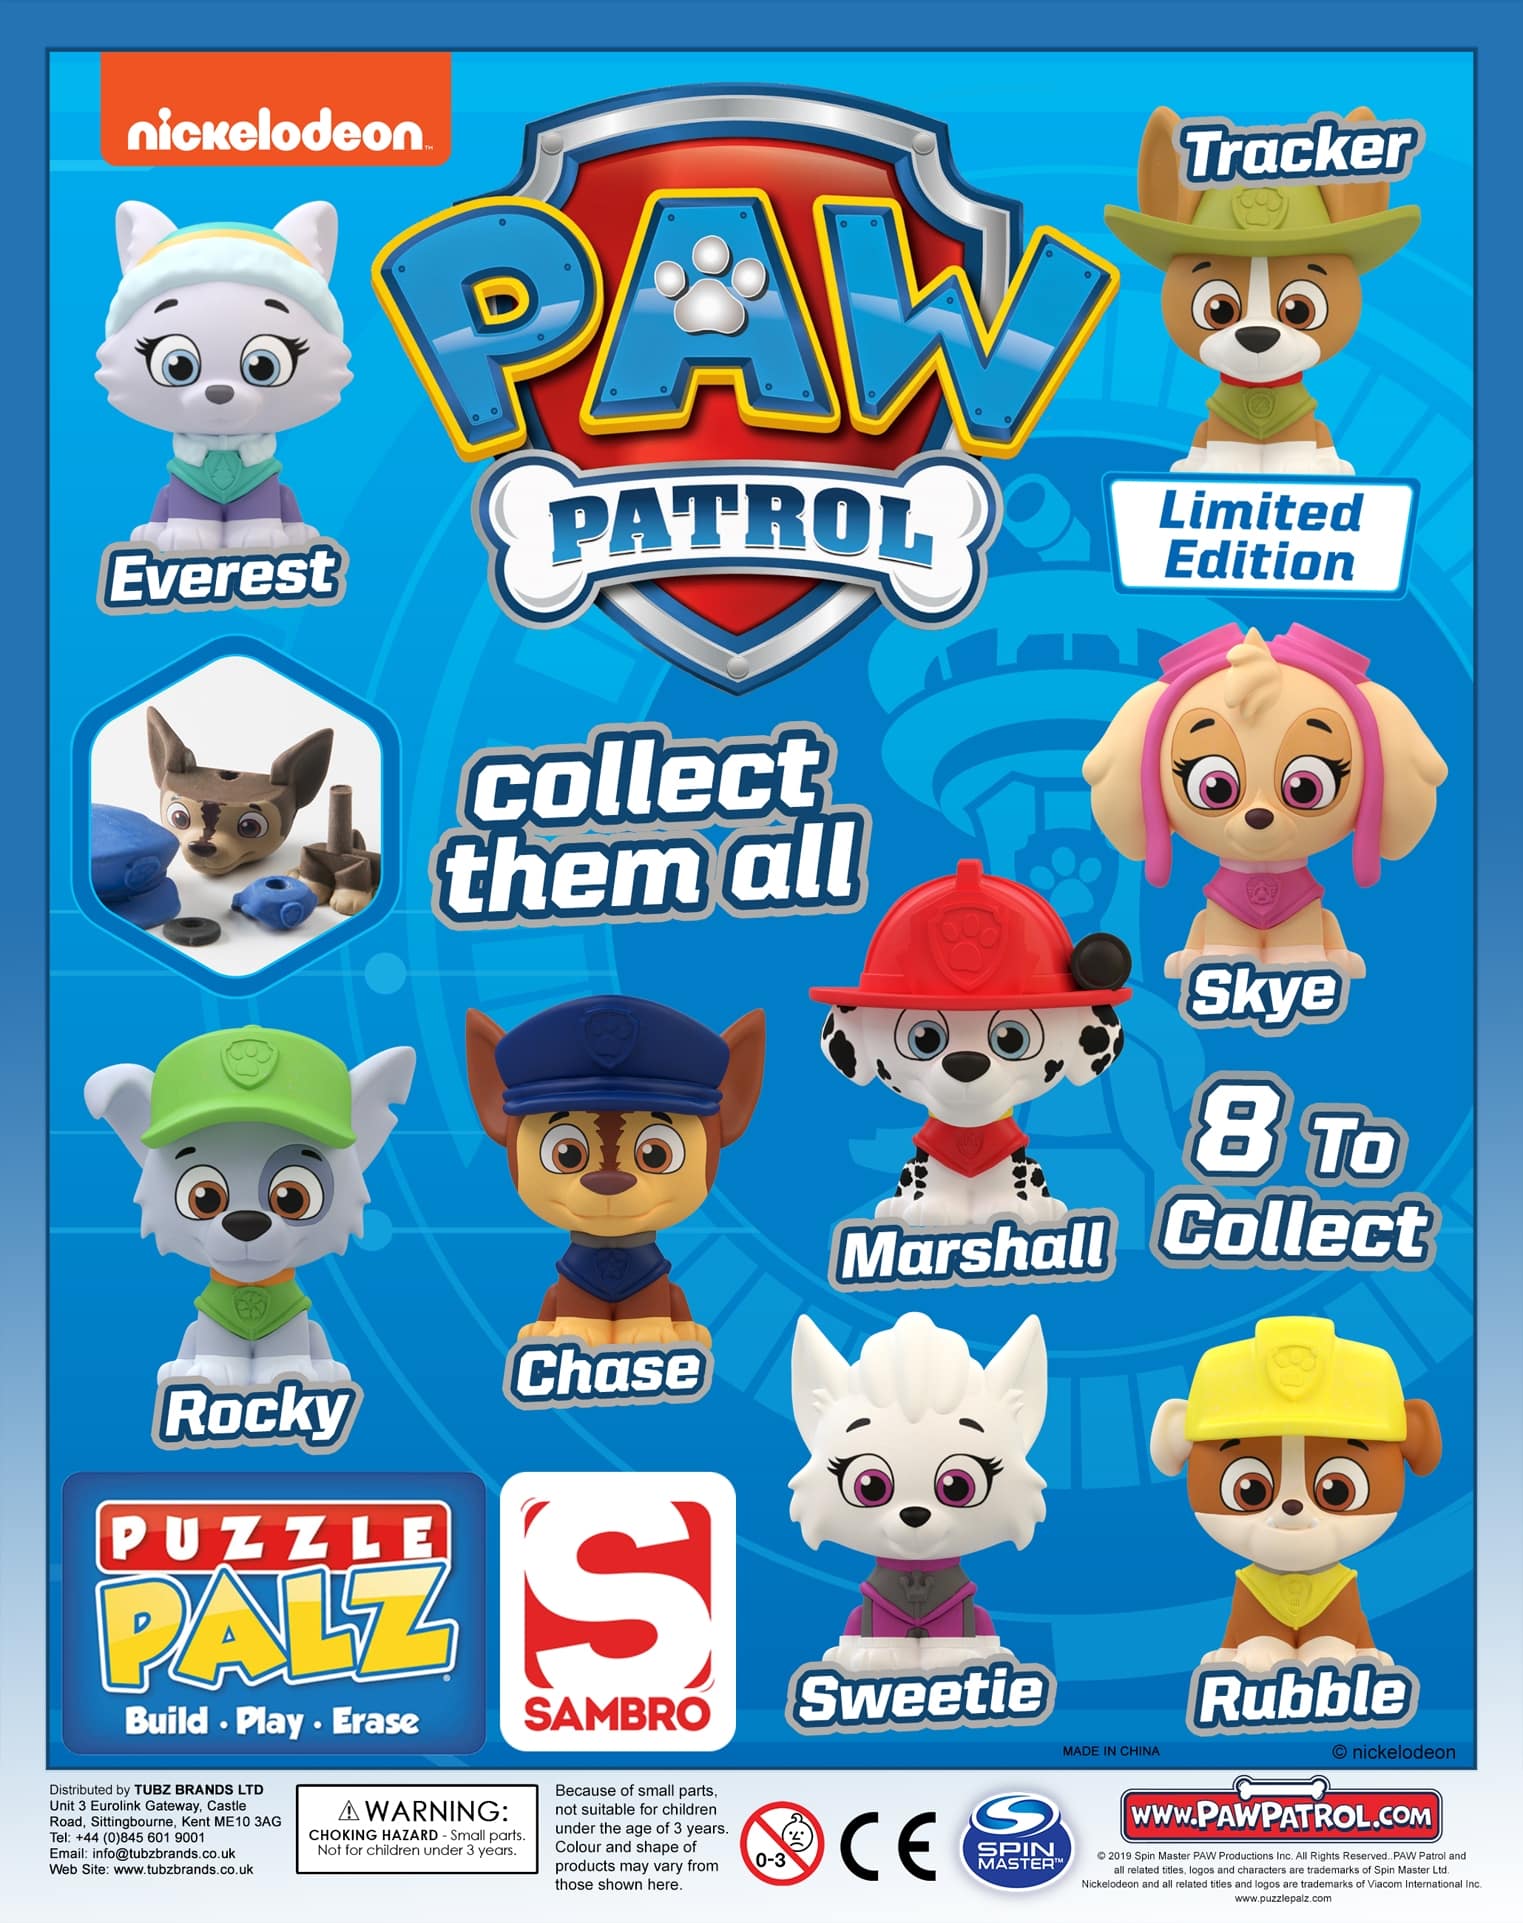 Desperat Begrænset Dømme Paw Patrol Puzzle Palz (Qty 75: 52-55p each) Premium 65mm £2 Vend | Tubz  Brands Online Shop